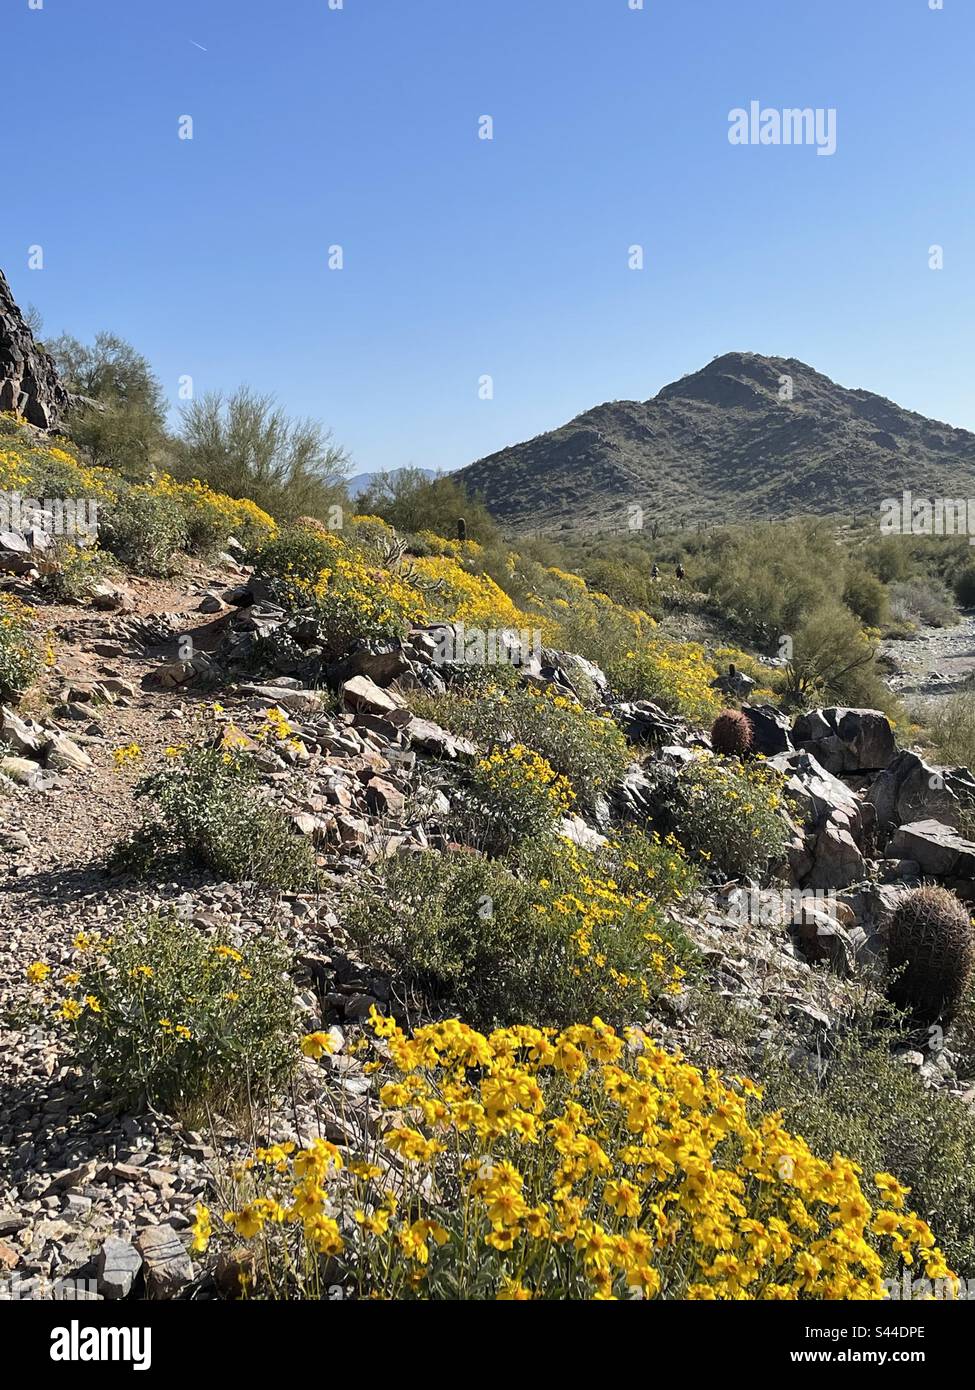 Réserve des montagnes de Phoenix au printemps, sentier de la ligne des fleurs des broussailles jaune vif, fleurs sauvages jaunes borgnes pentes rocheuses, ciel bleu vif, désert de Sonoran, Arizona Banque D'Images